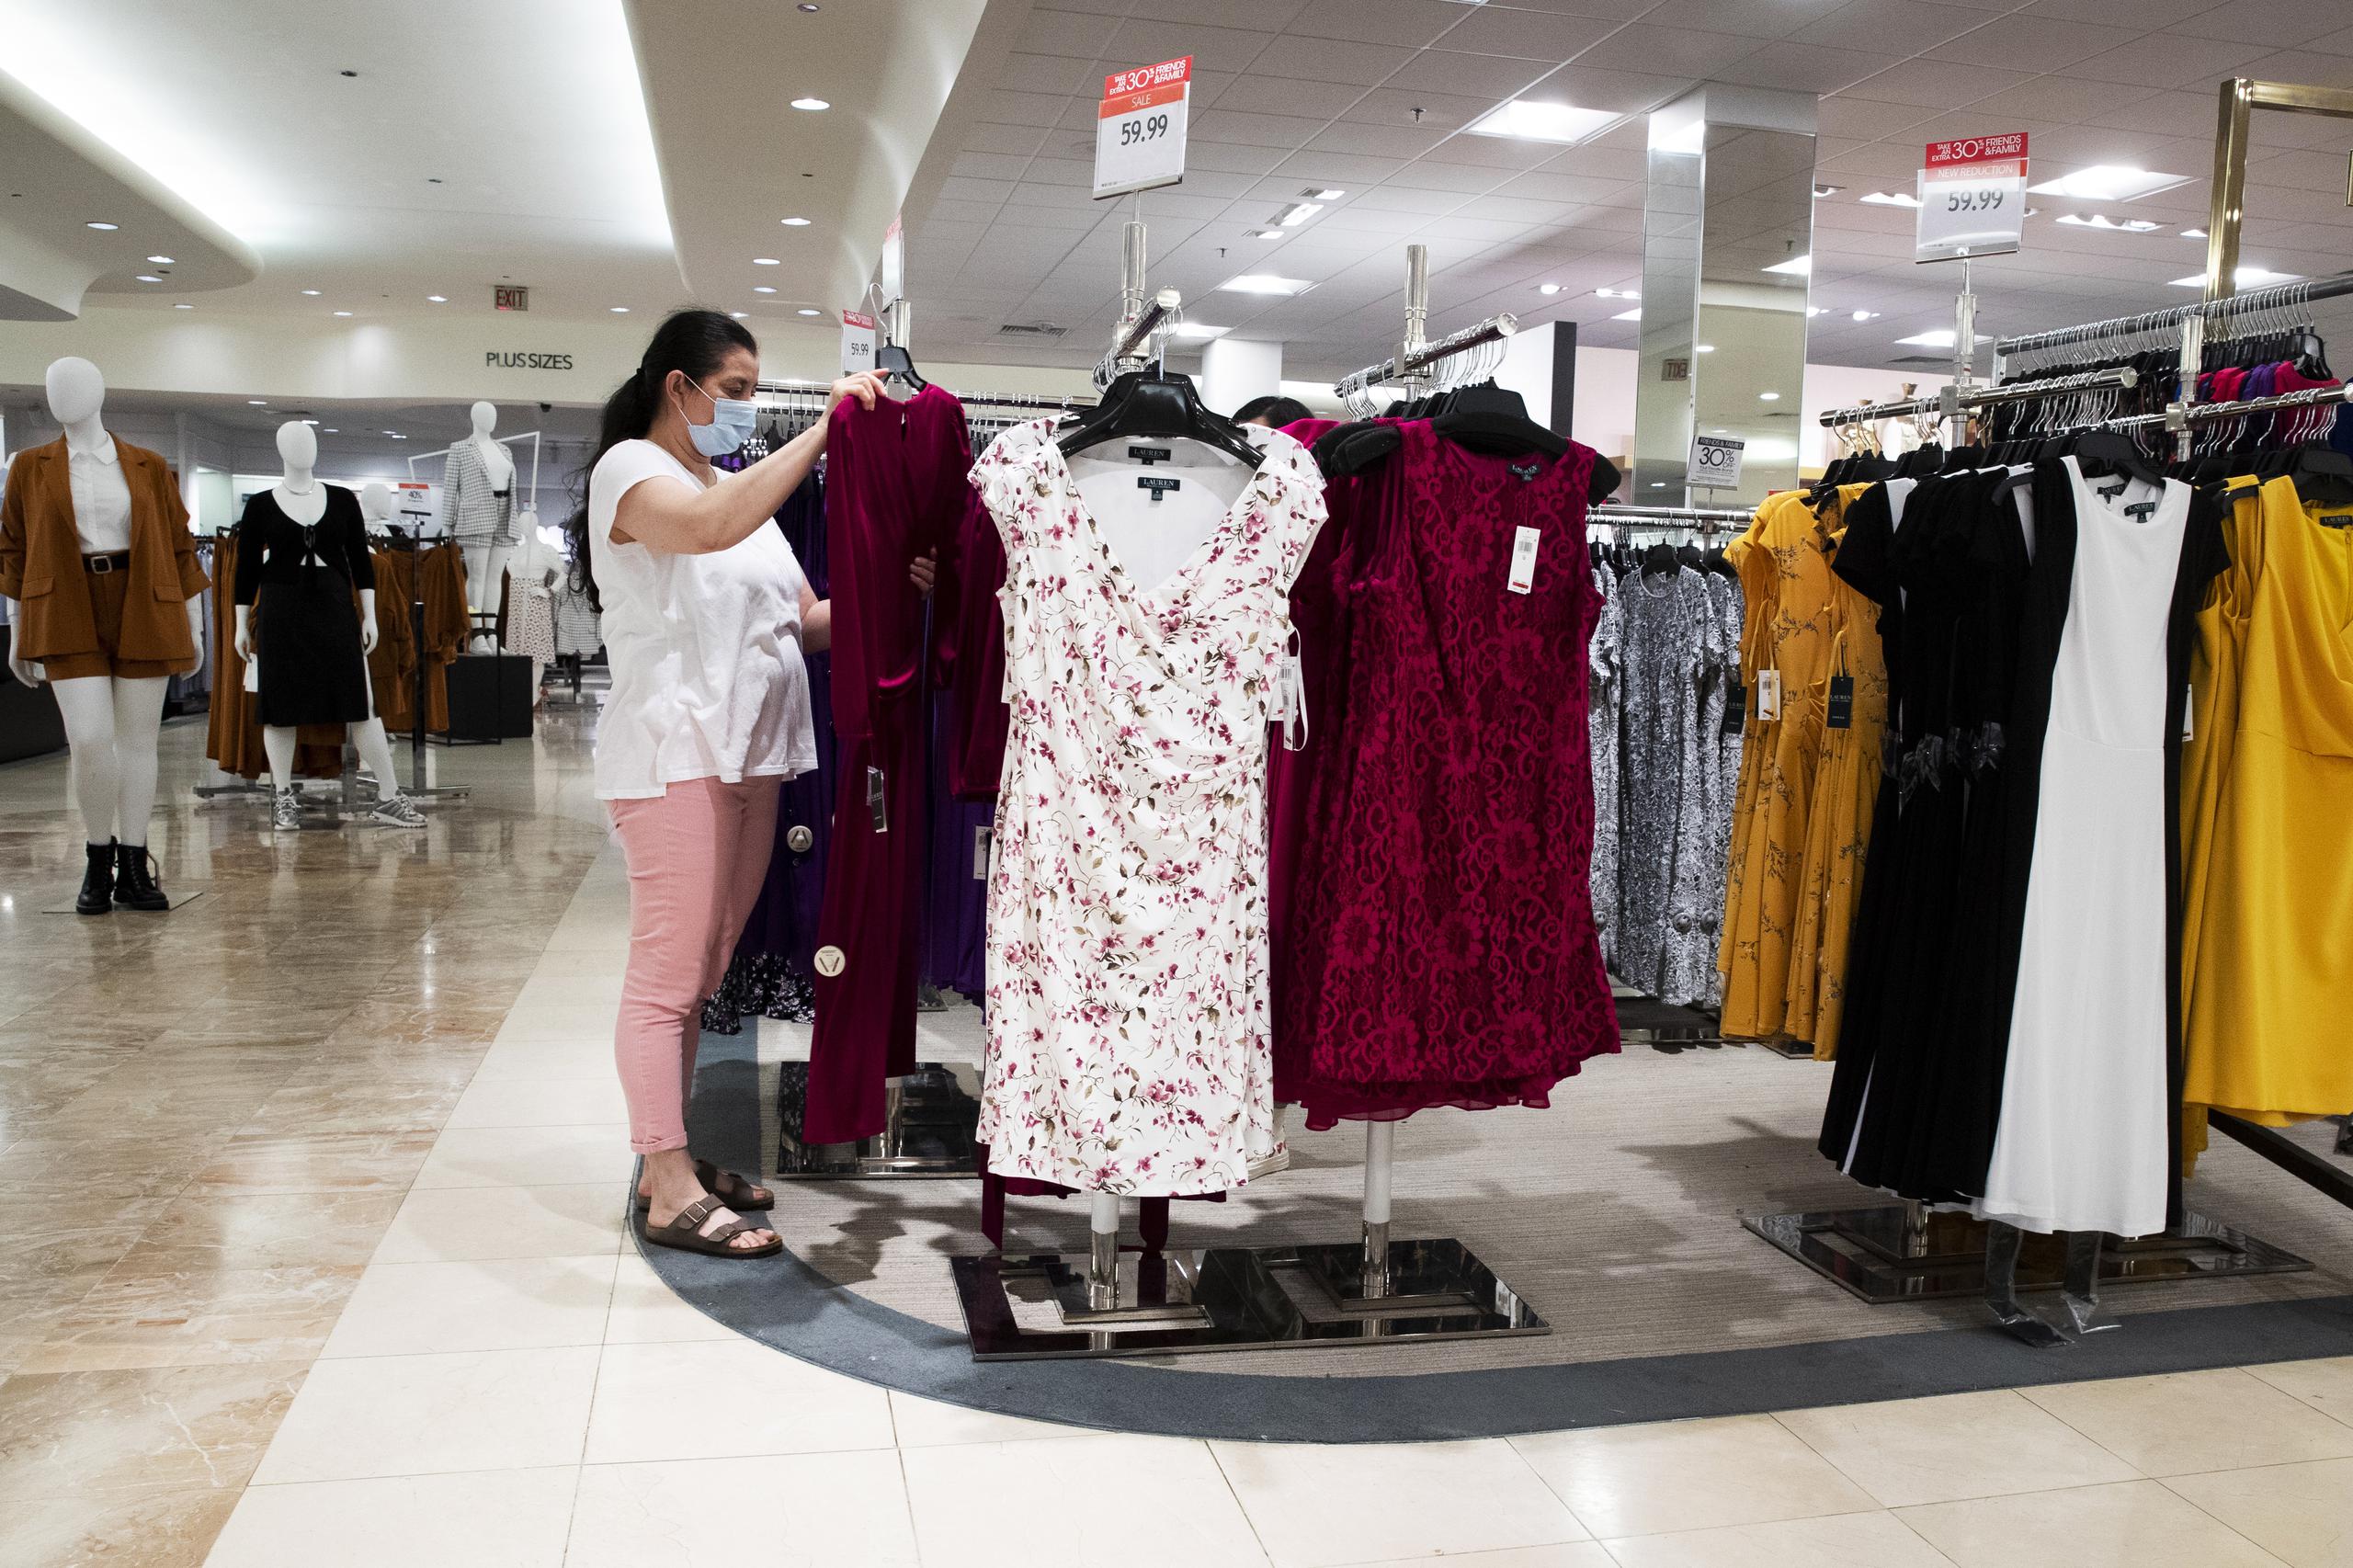 Una mujer hace compras en un centro comercial de Estados Unidos. (Archivo/EFE/Michael Reynolds)